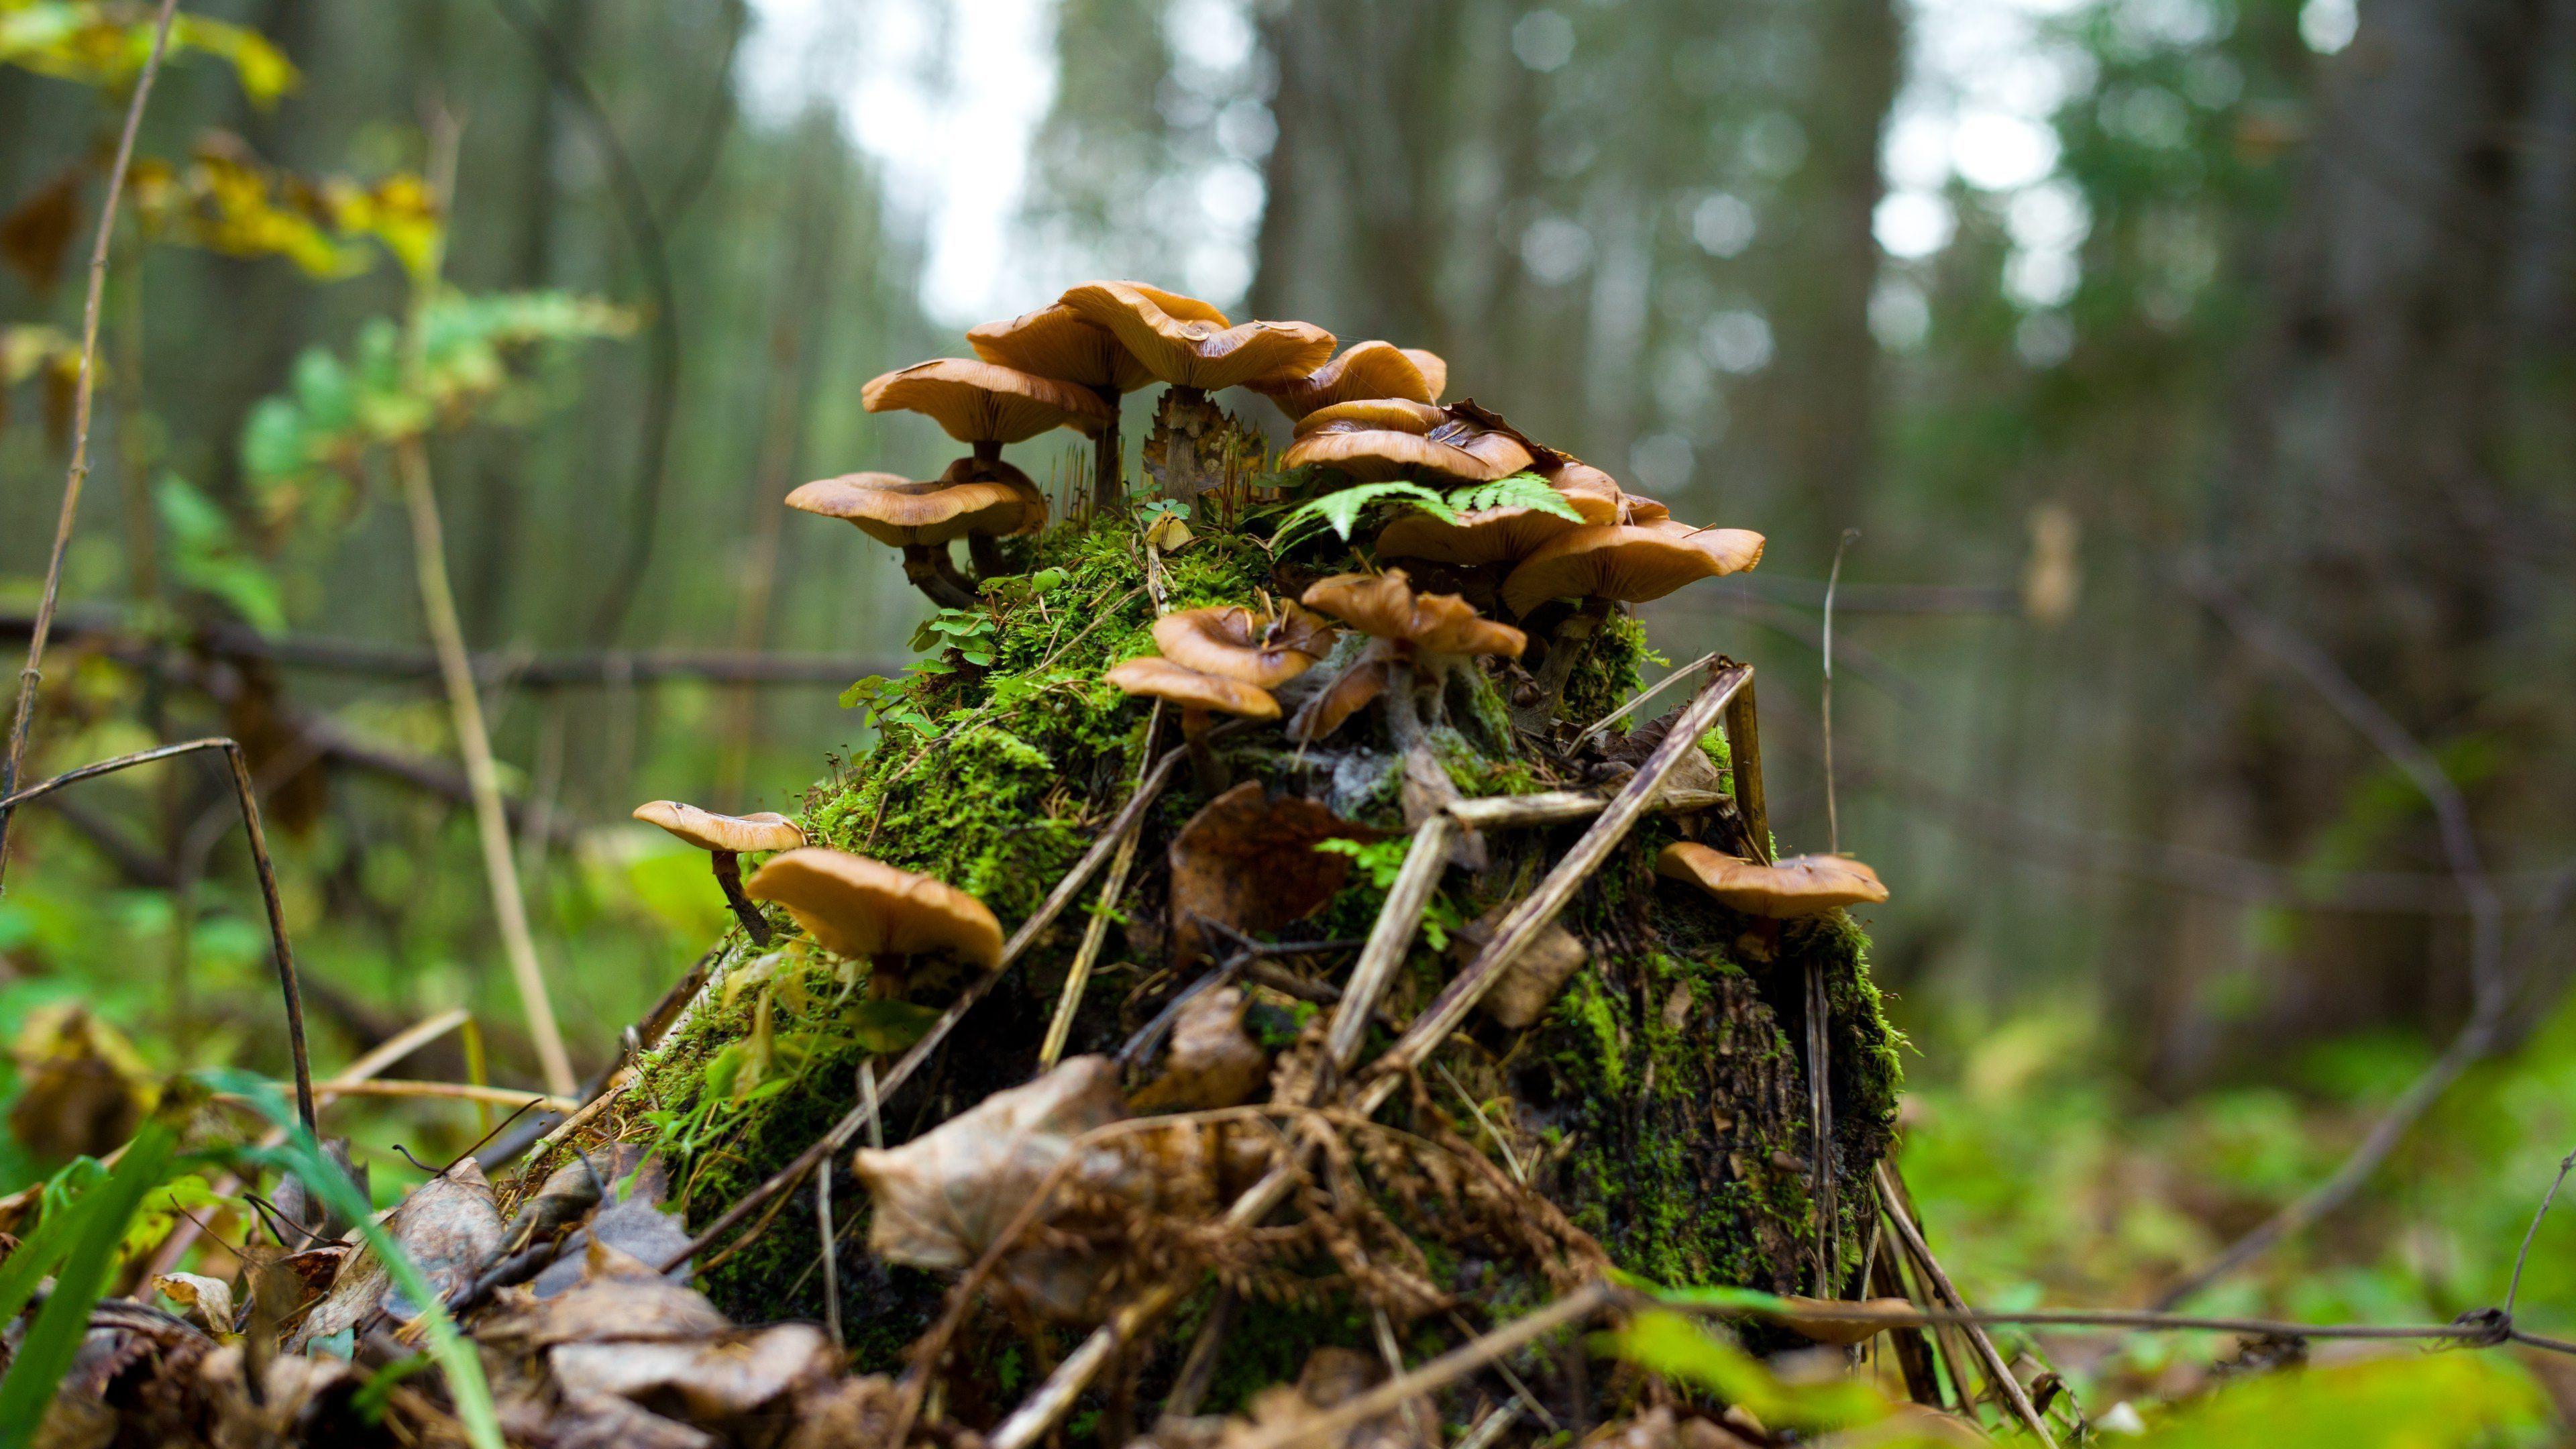 Mushrooms on the moss HD desktop wallpaper, Widescreen, High